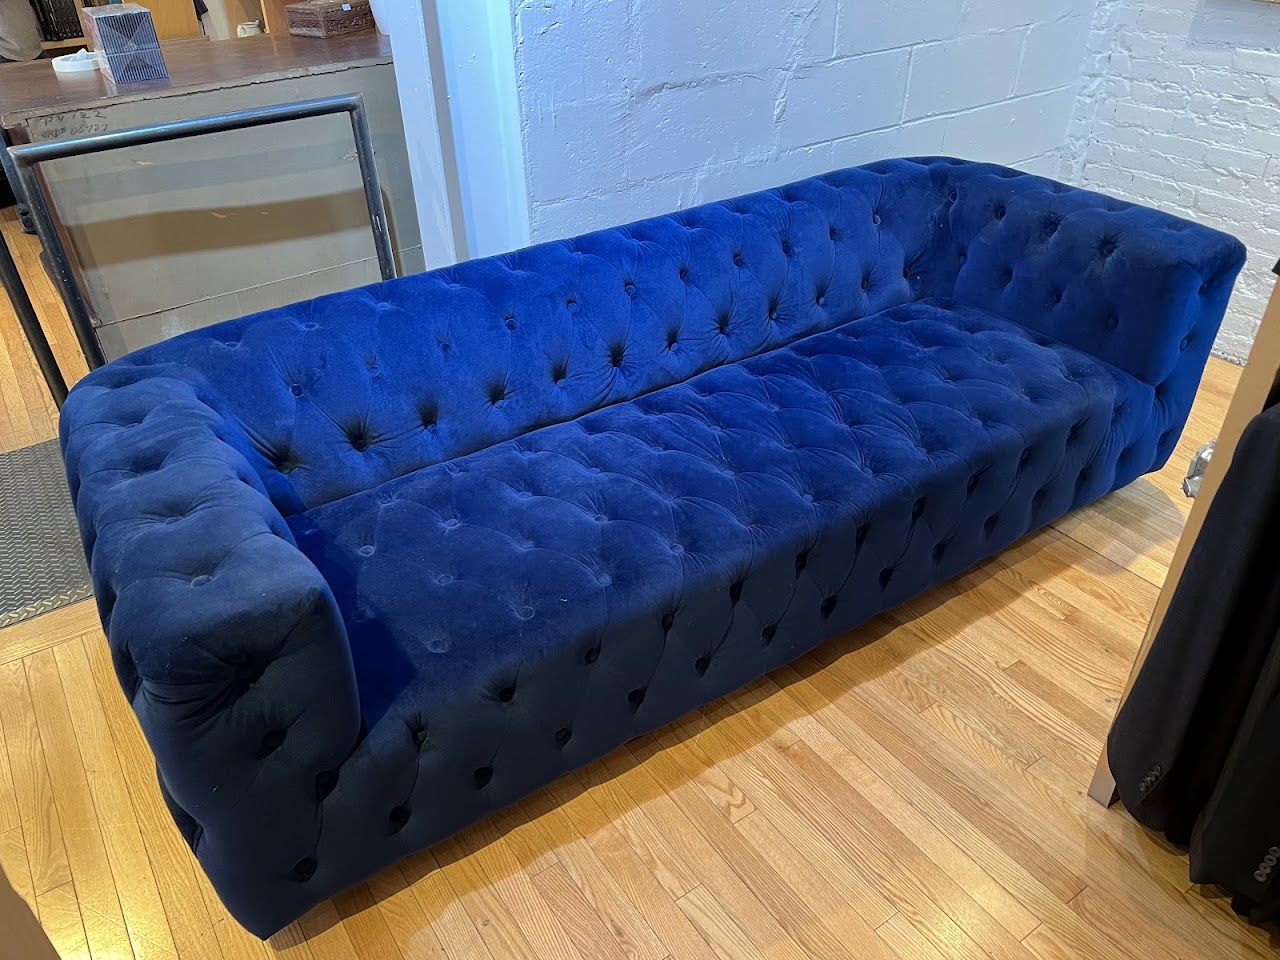 Blue Velvet Chesterfield Sofa